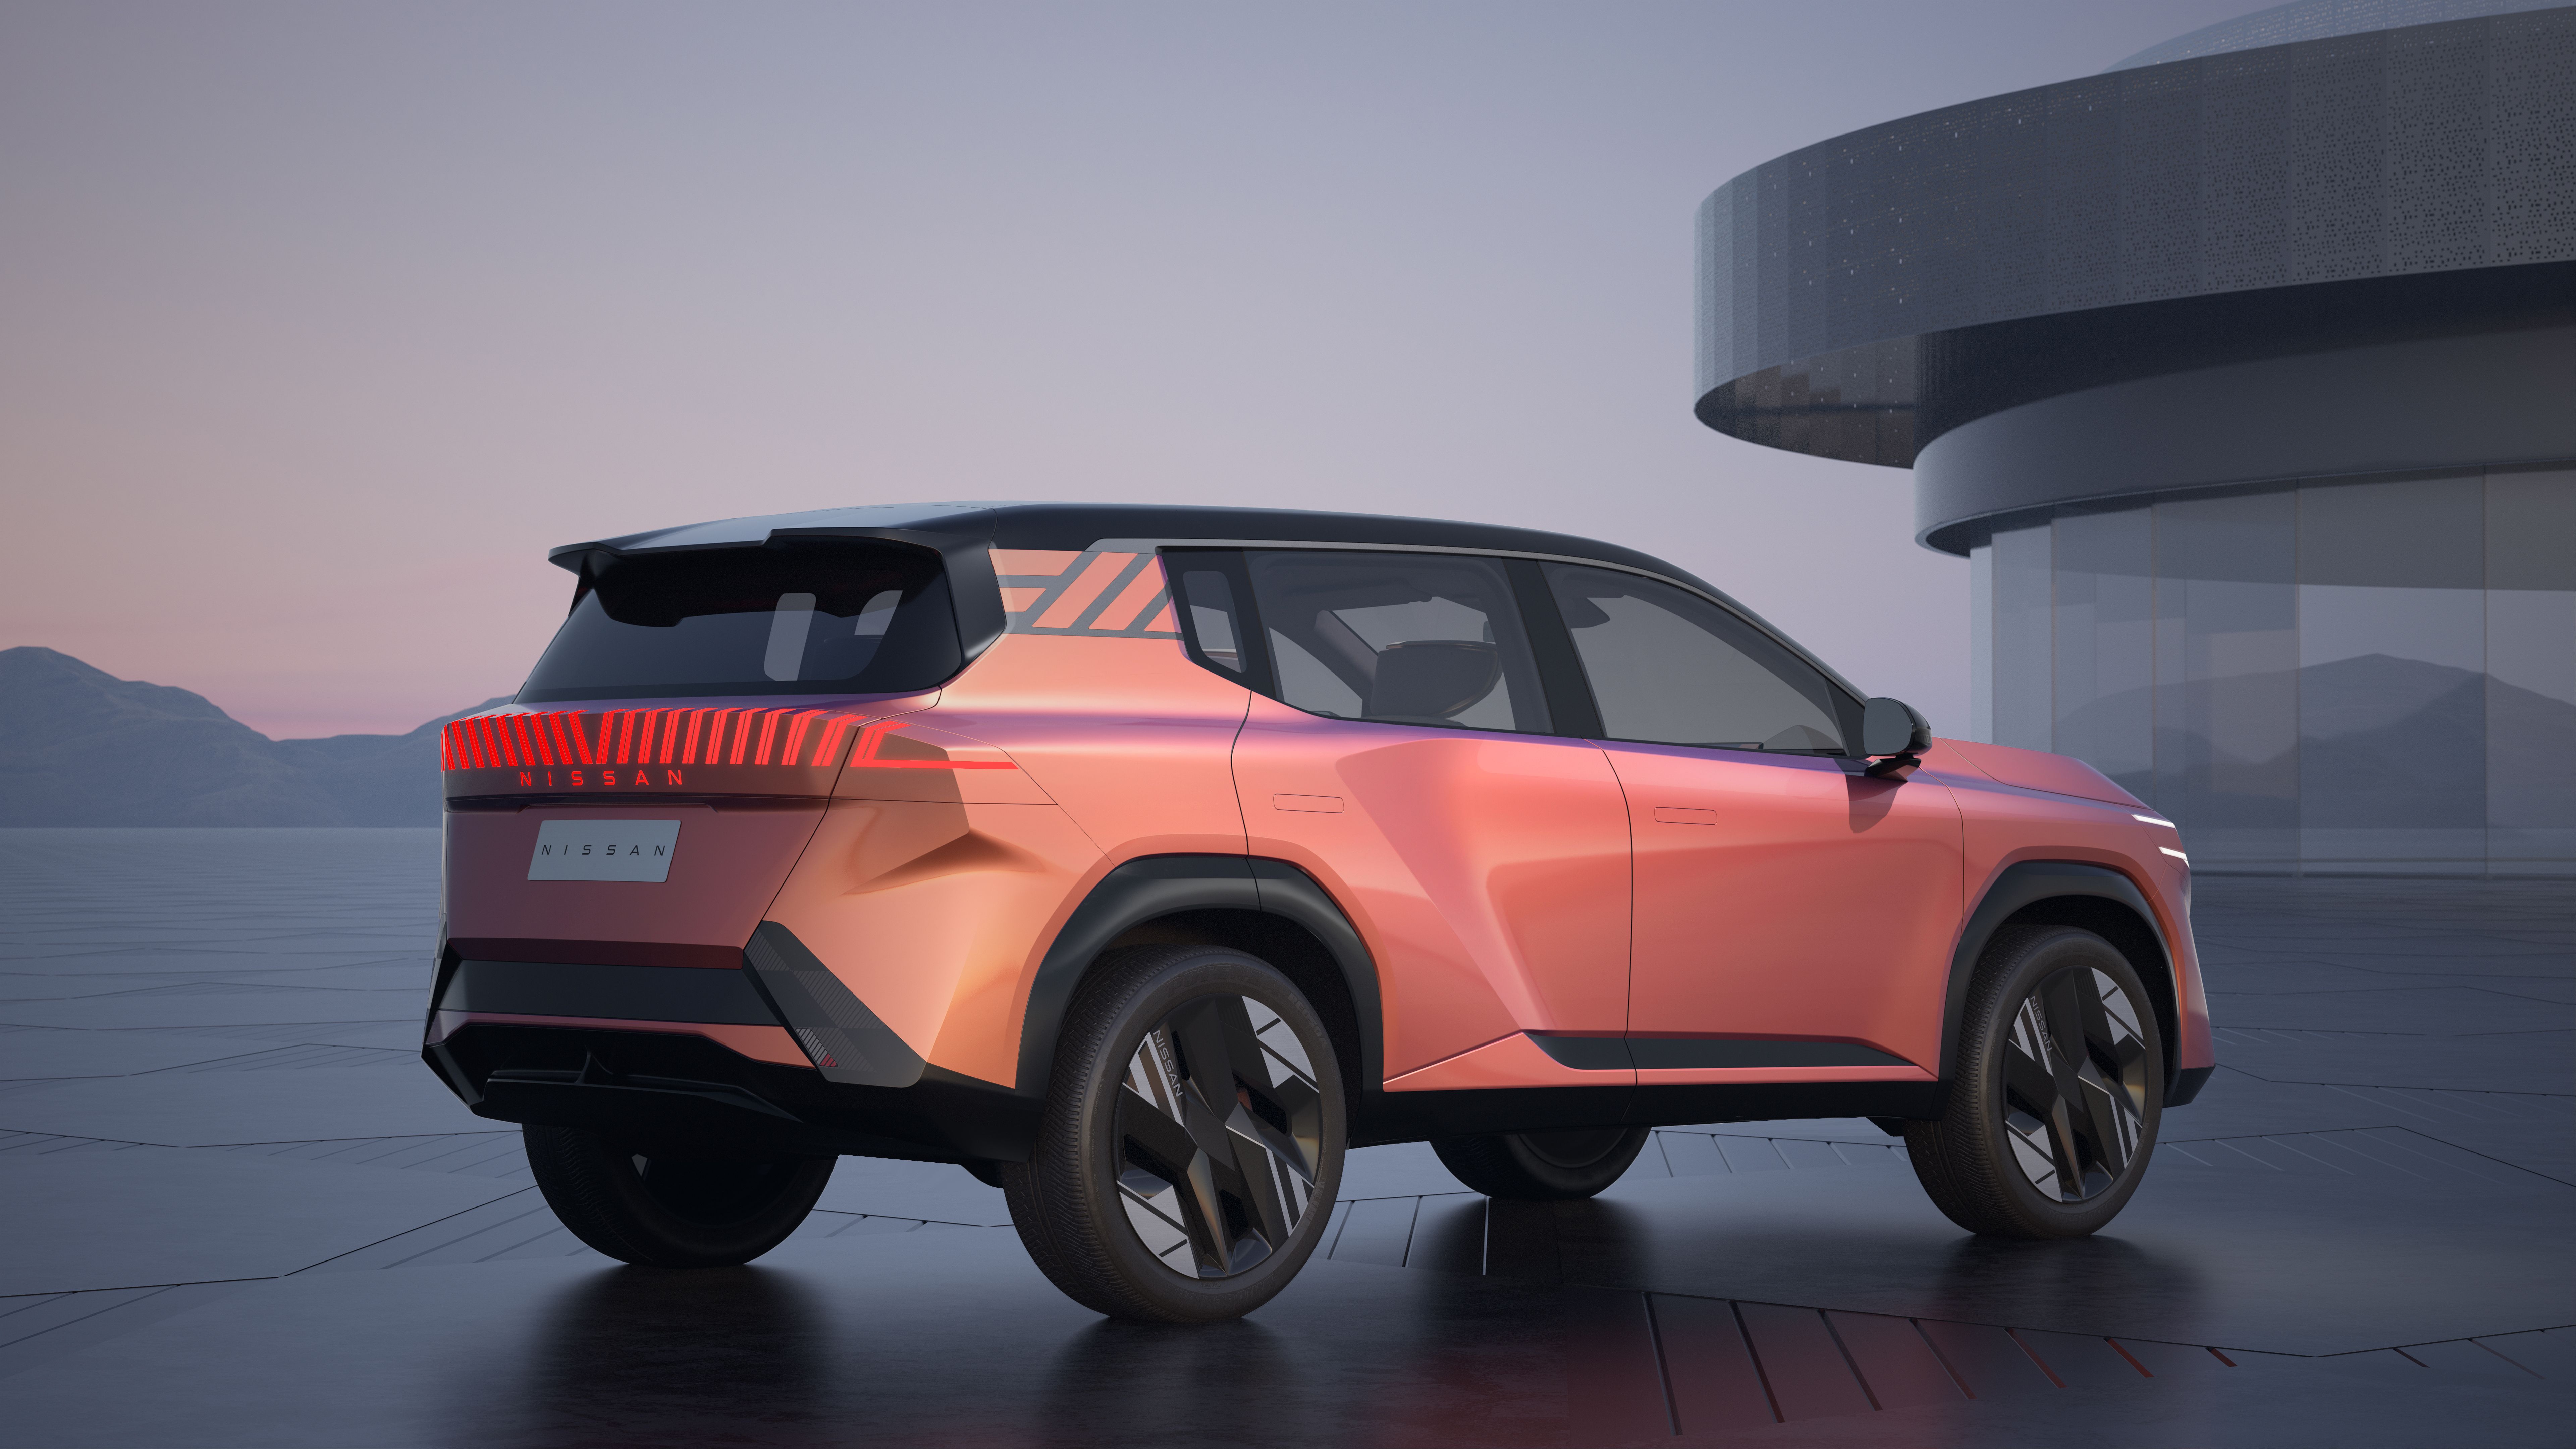 日产在北京车展发布四款全新电动概念车-豁天游|活田酉 一个专门分享有趣的信息，激发人们的求知欲。